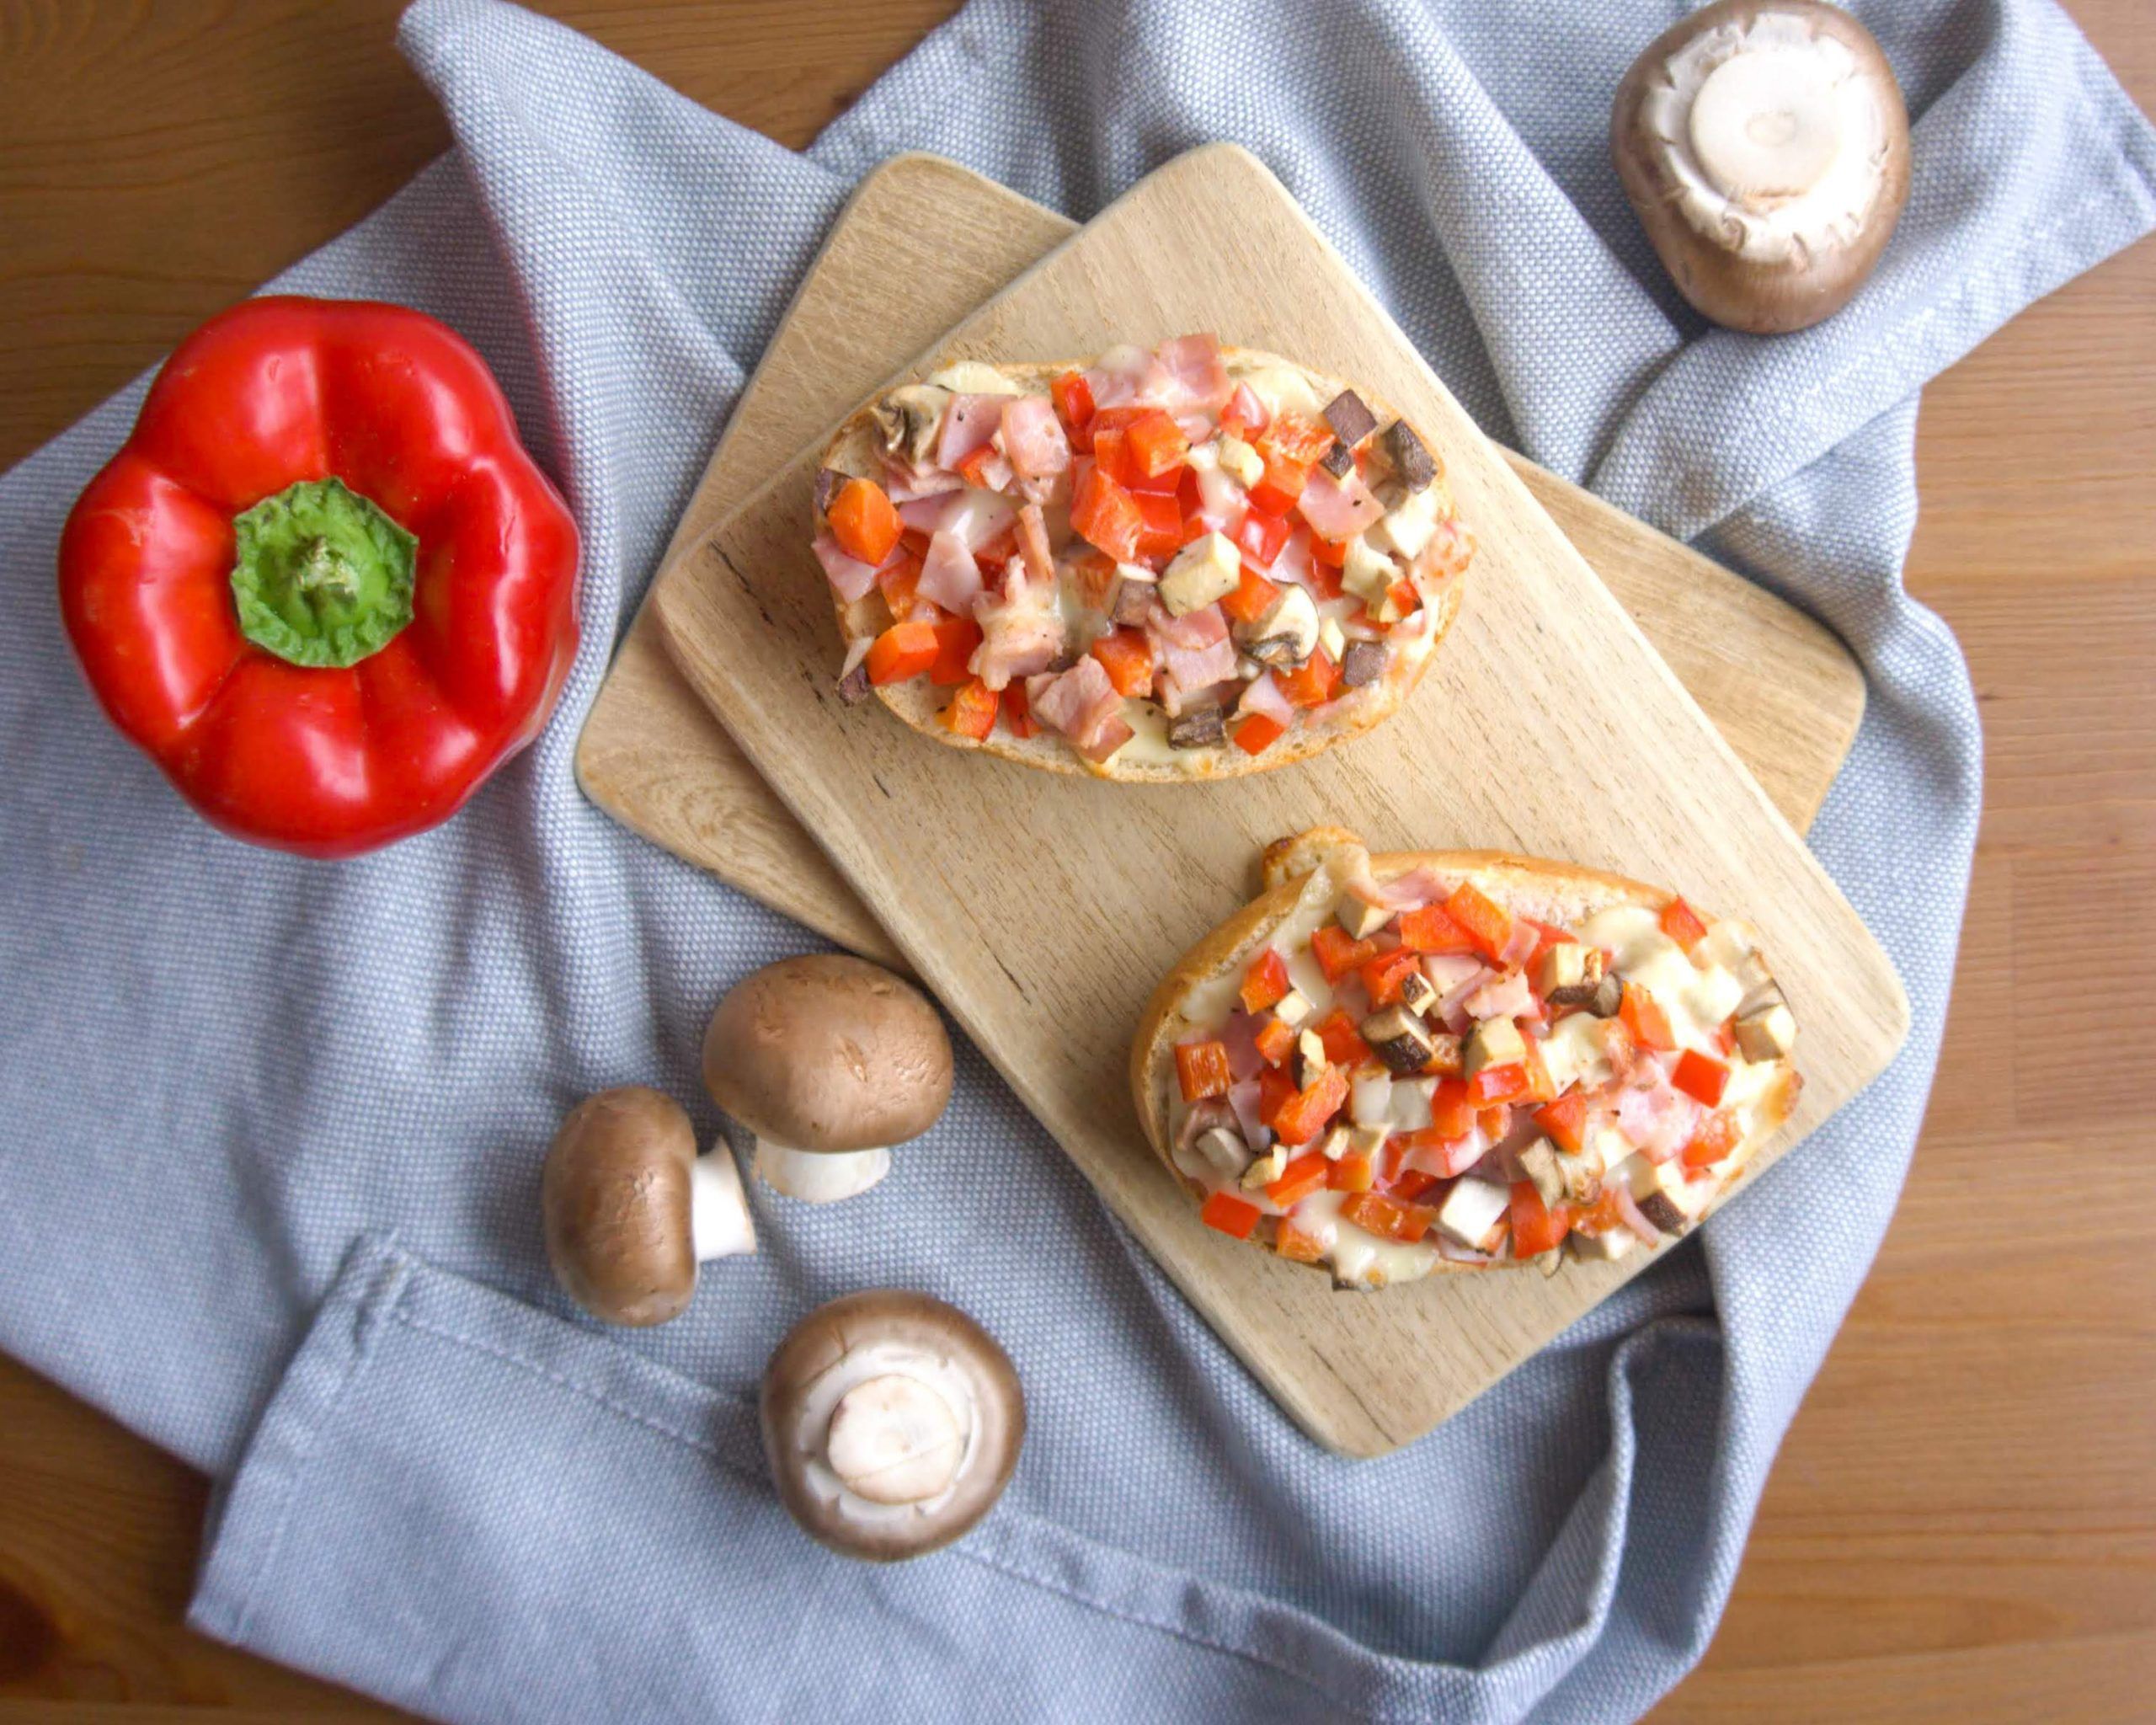 Dieses Bild zeigt die vegetarischen Pizzabrötchen mit Paprika und Champignons